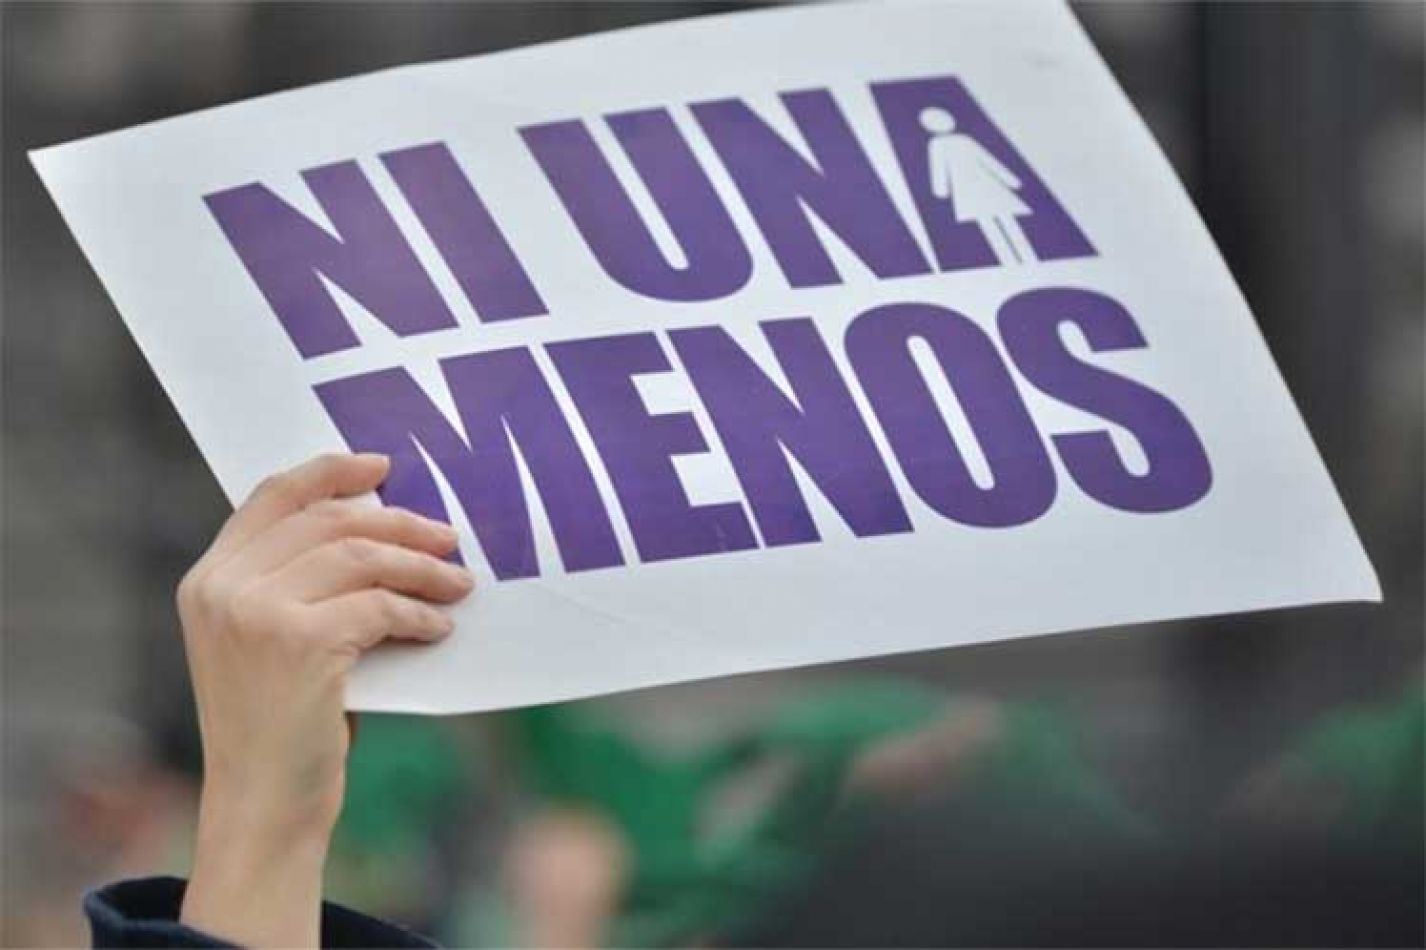 El año pasado hubo un femicidio cada 30 horas en Argentina